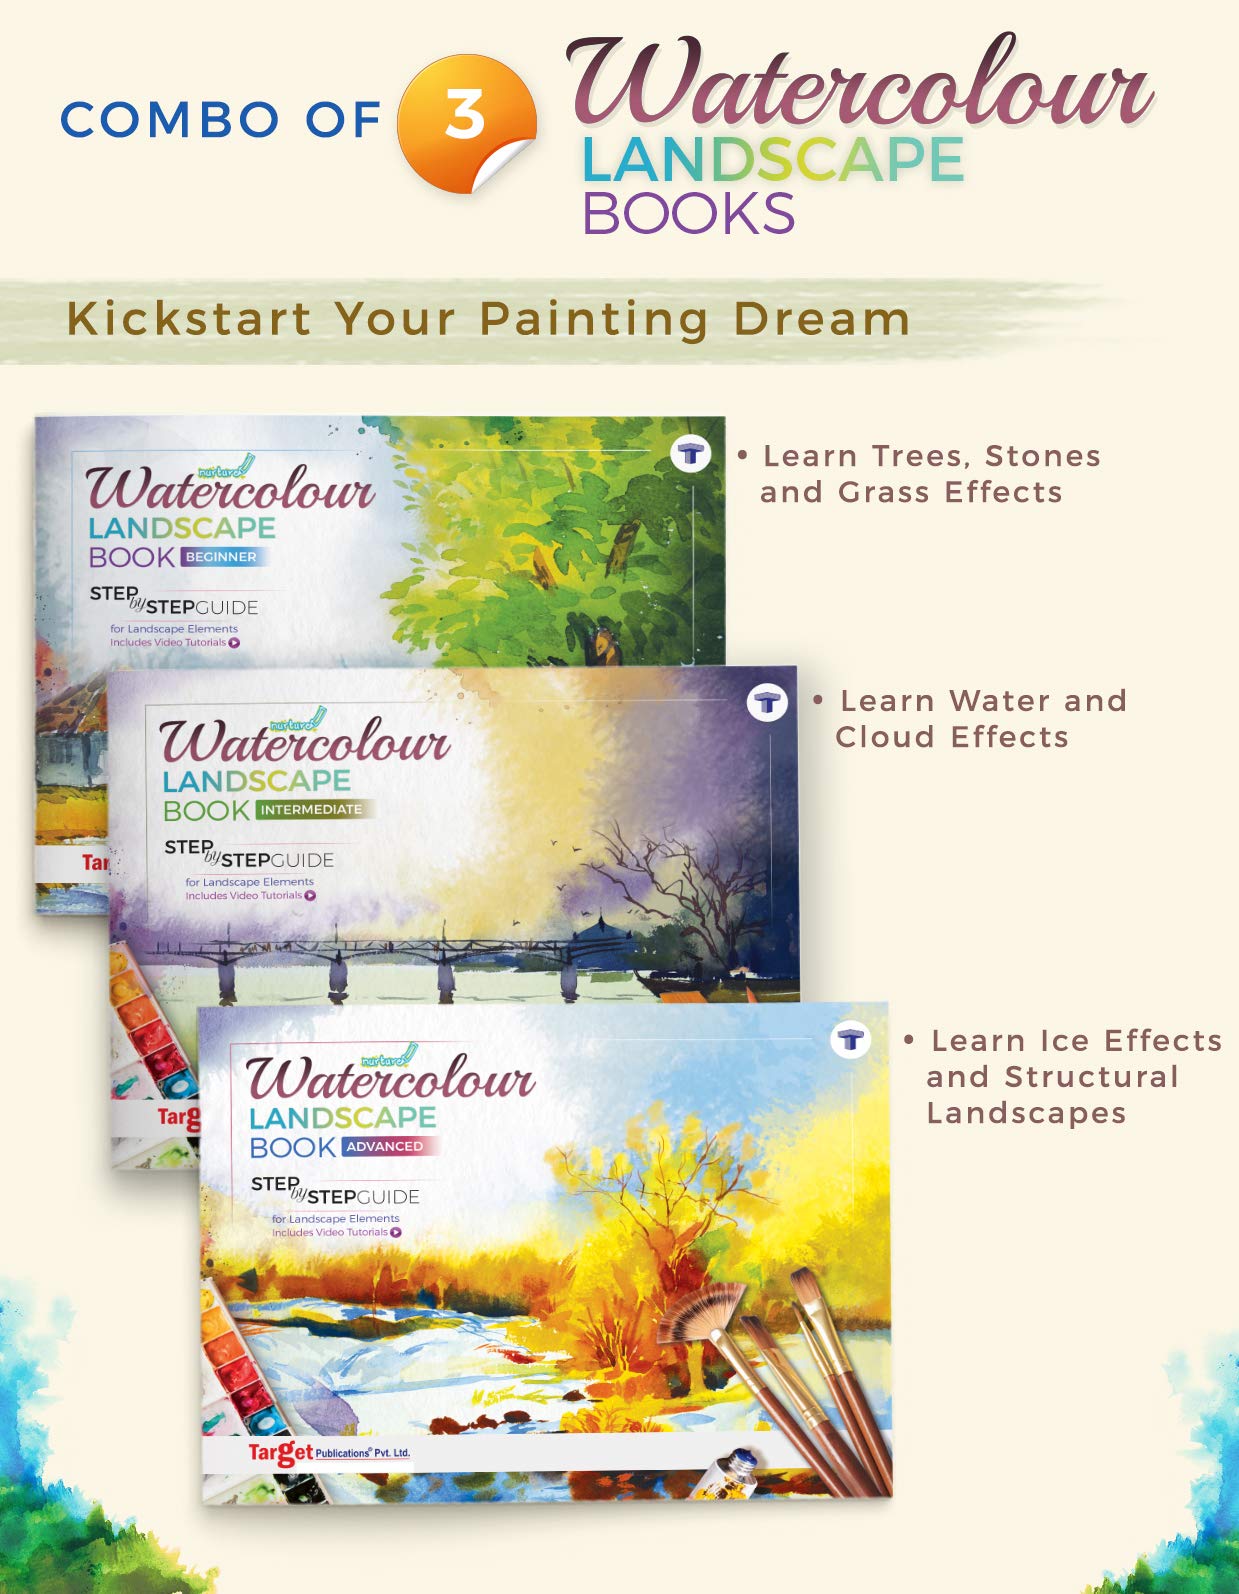 Watercolour Landscape Book